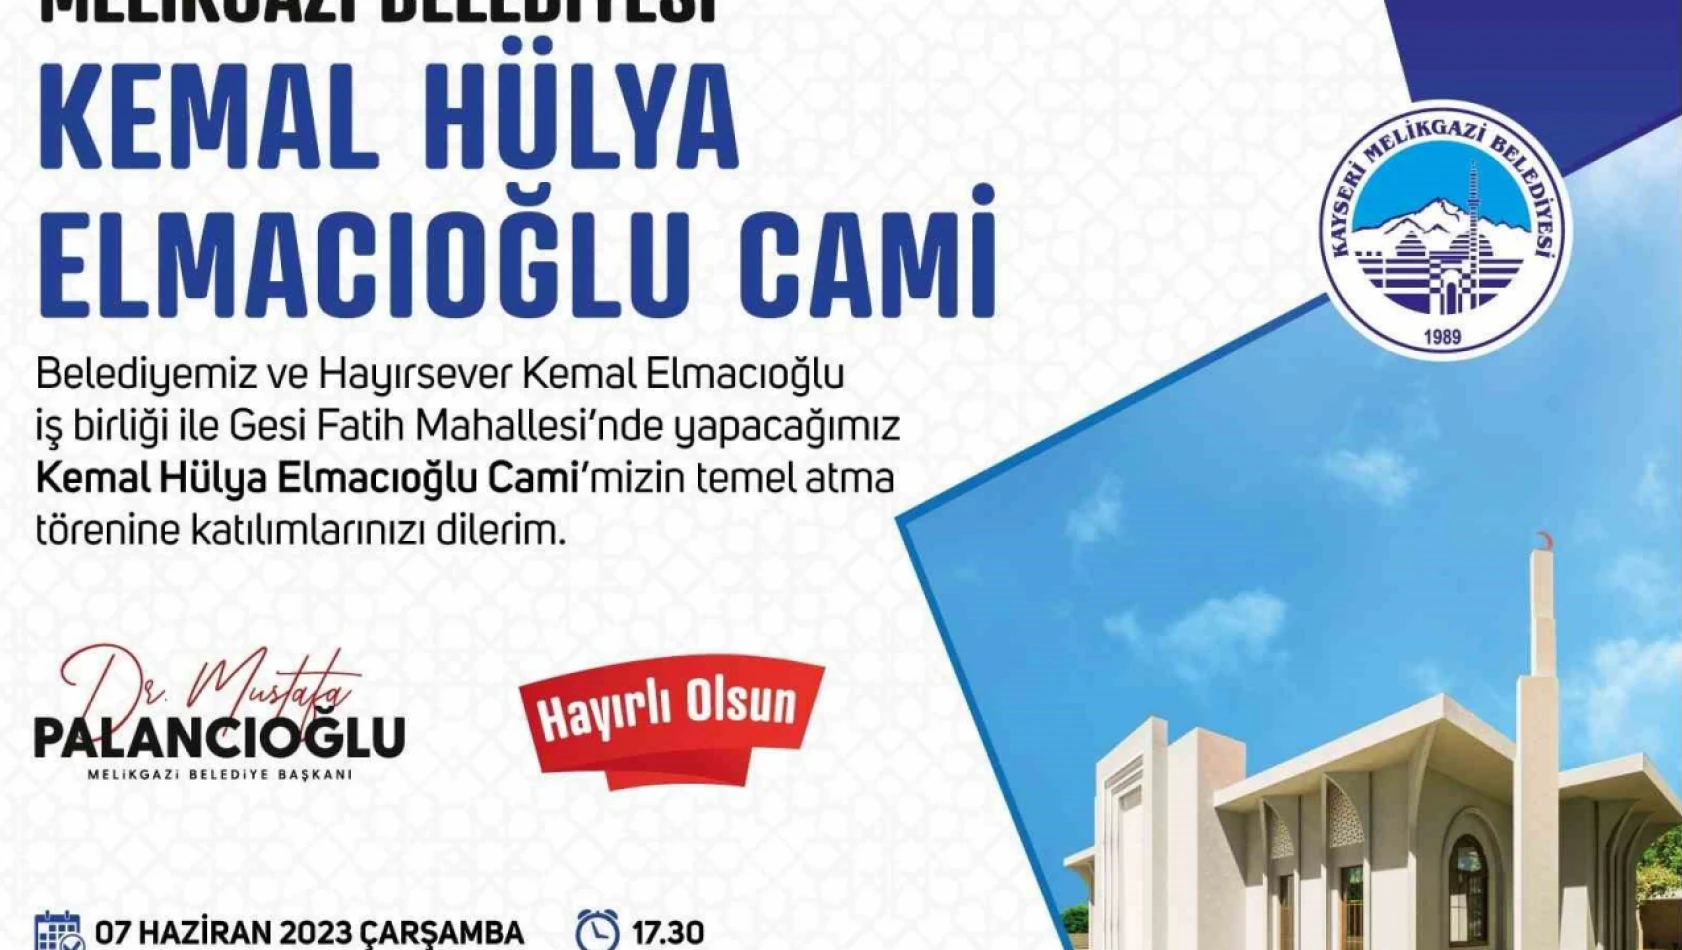 Kemal - Hülya Elmacıoğlu Cami'nin Temeli AtılacaK